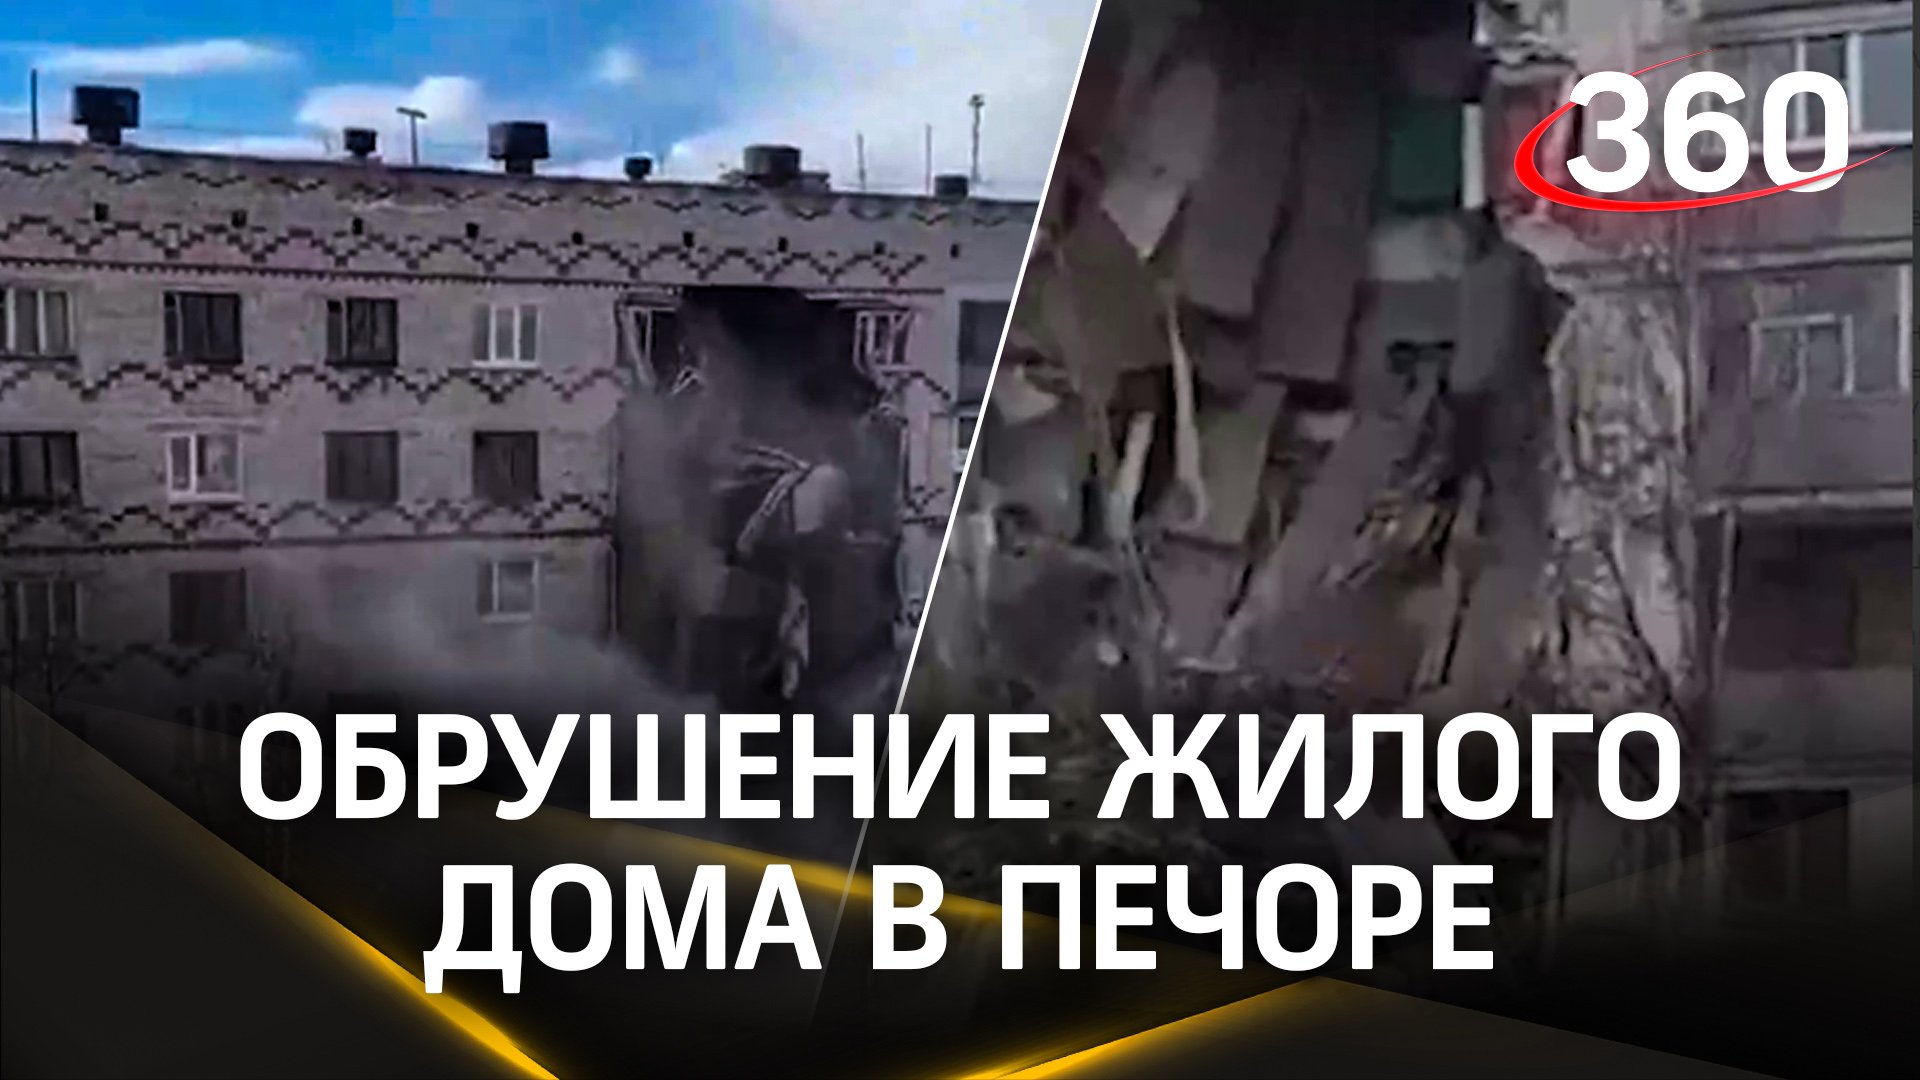 Часть пятиэтажки рухнула в Печоре: спасатели успели эвакуировать жильцов перед ЧП